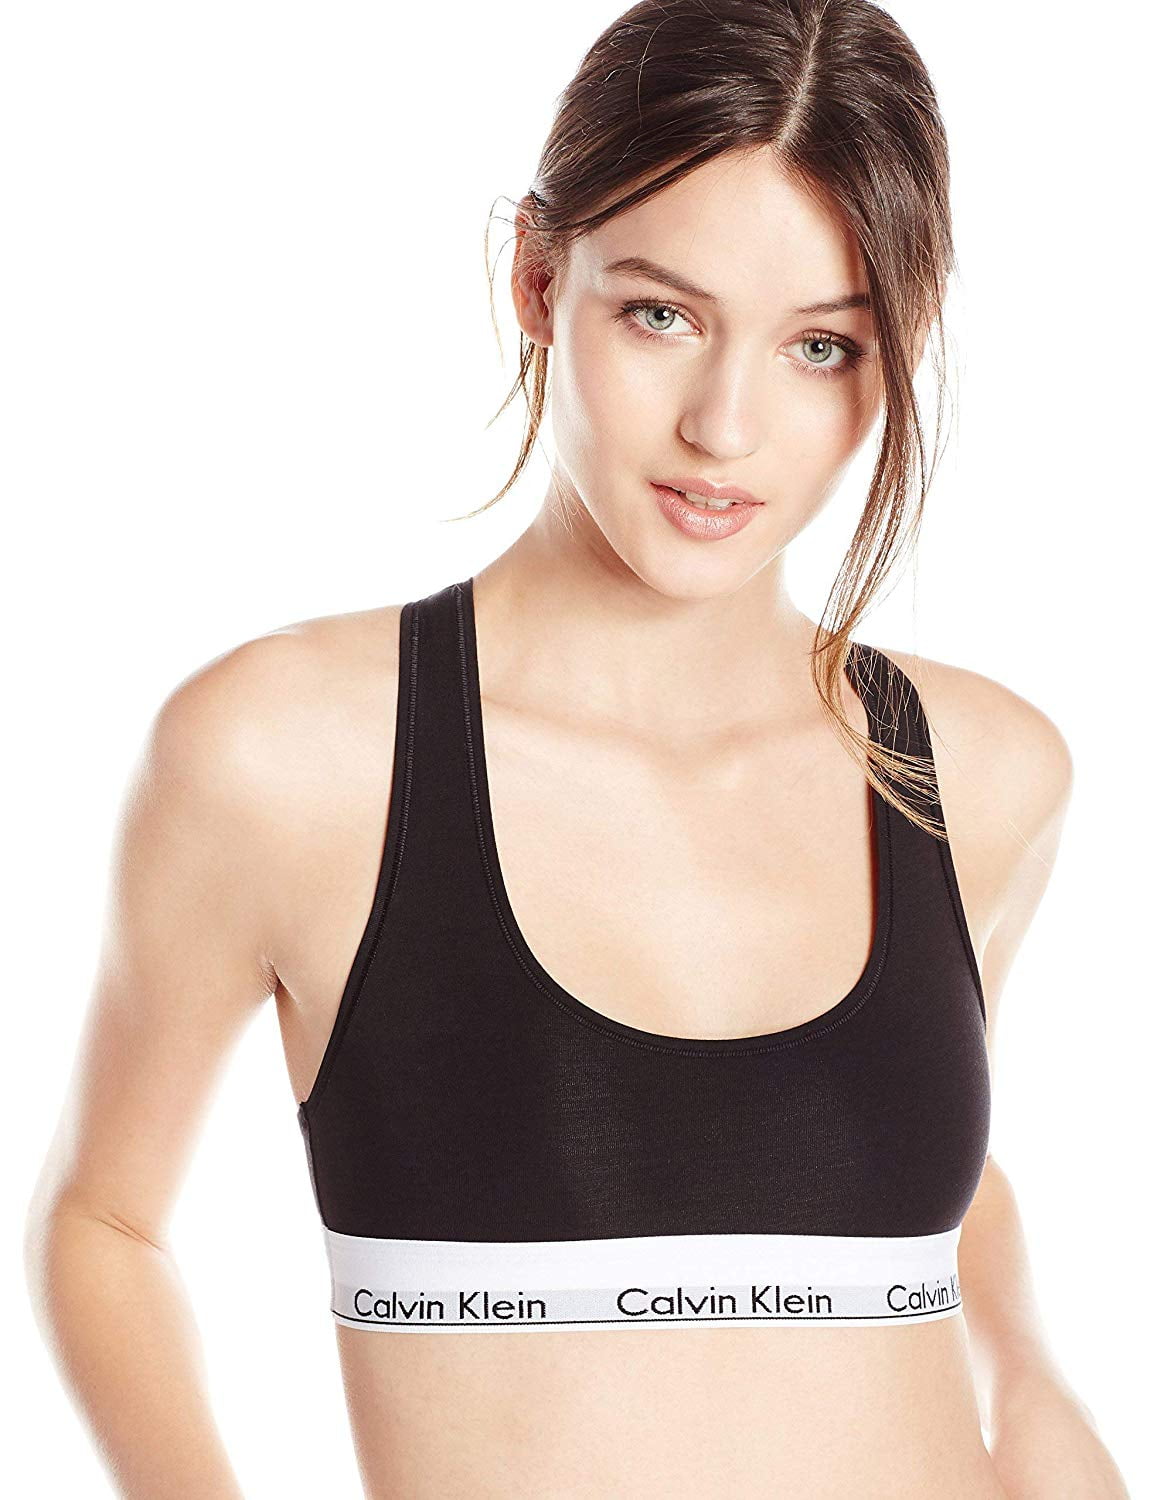 Calvin Klein Women's Modern Cotton Bralette, Black, Medium 